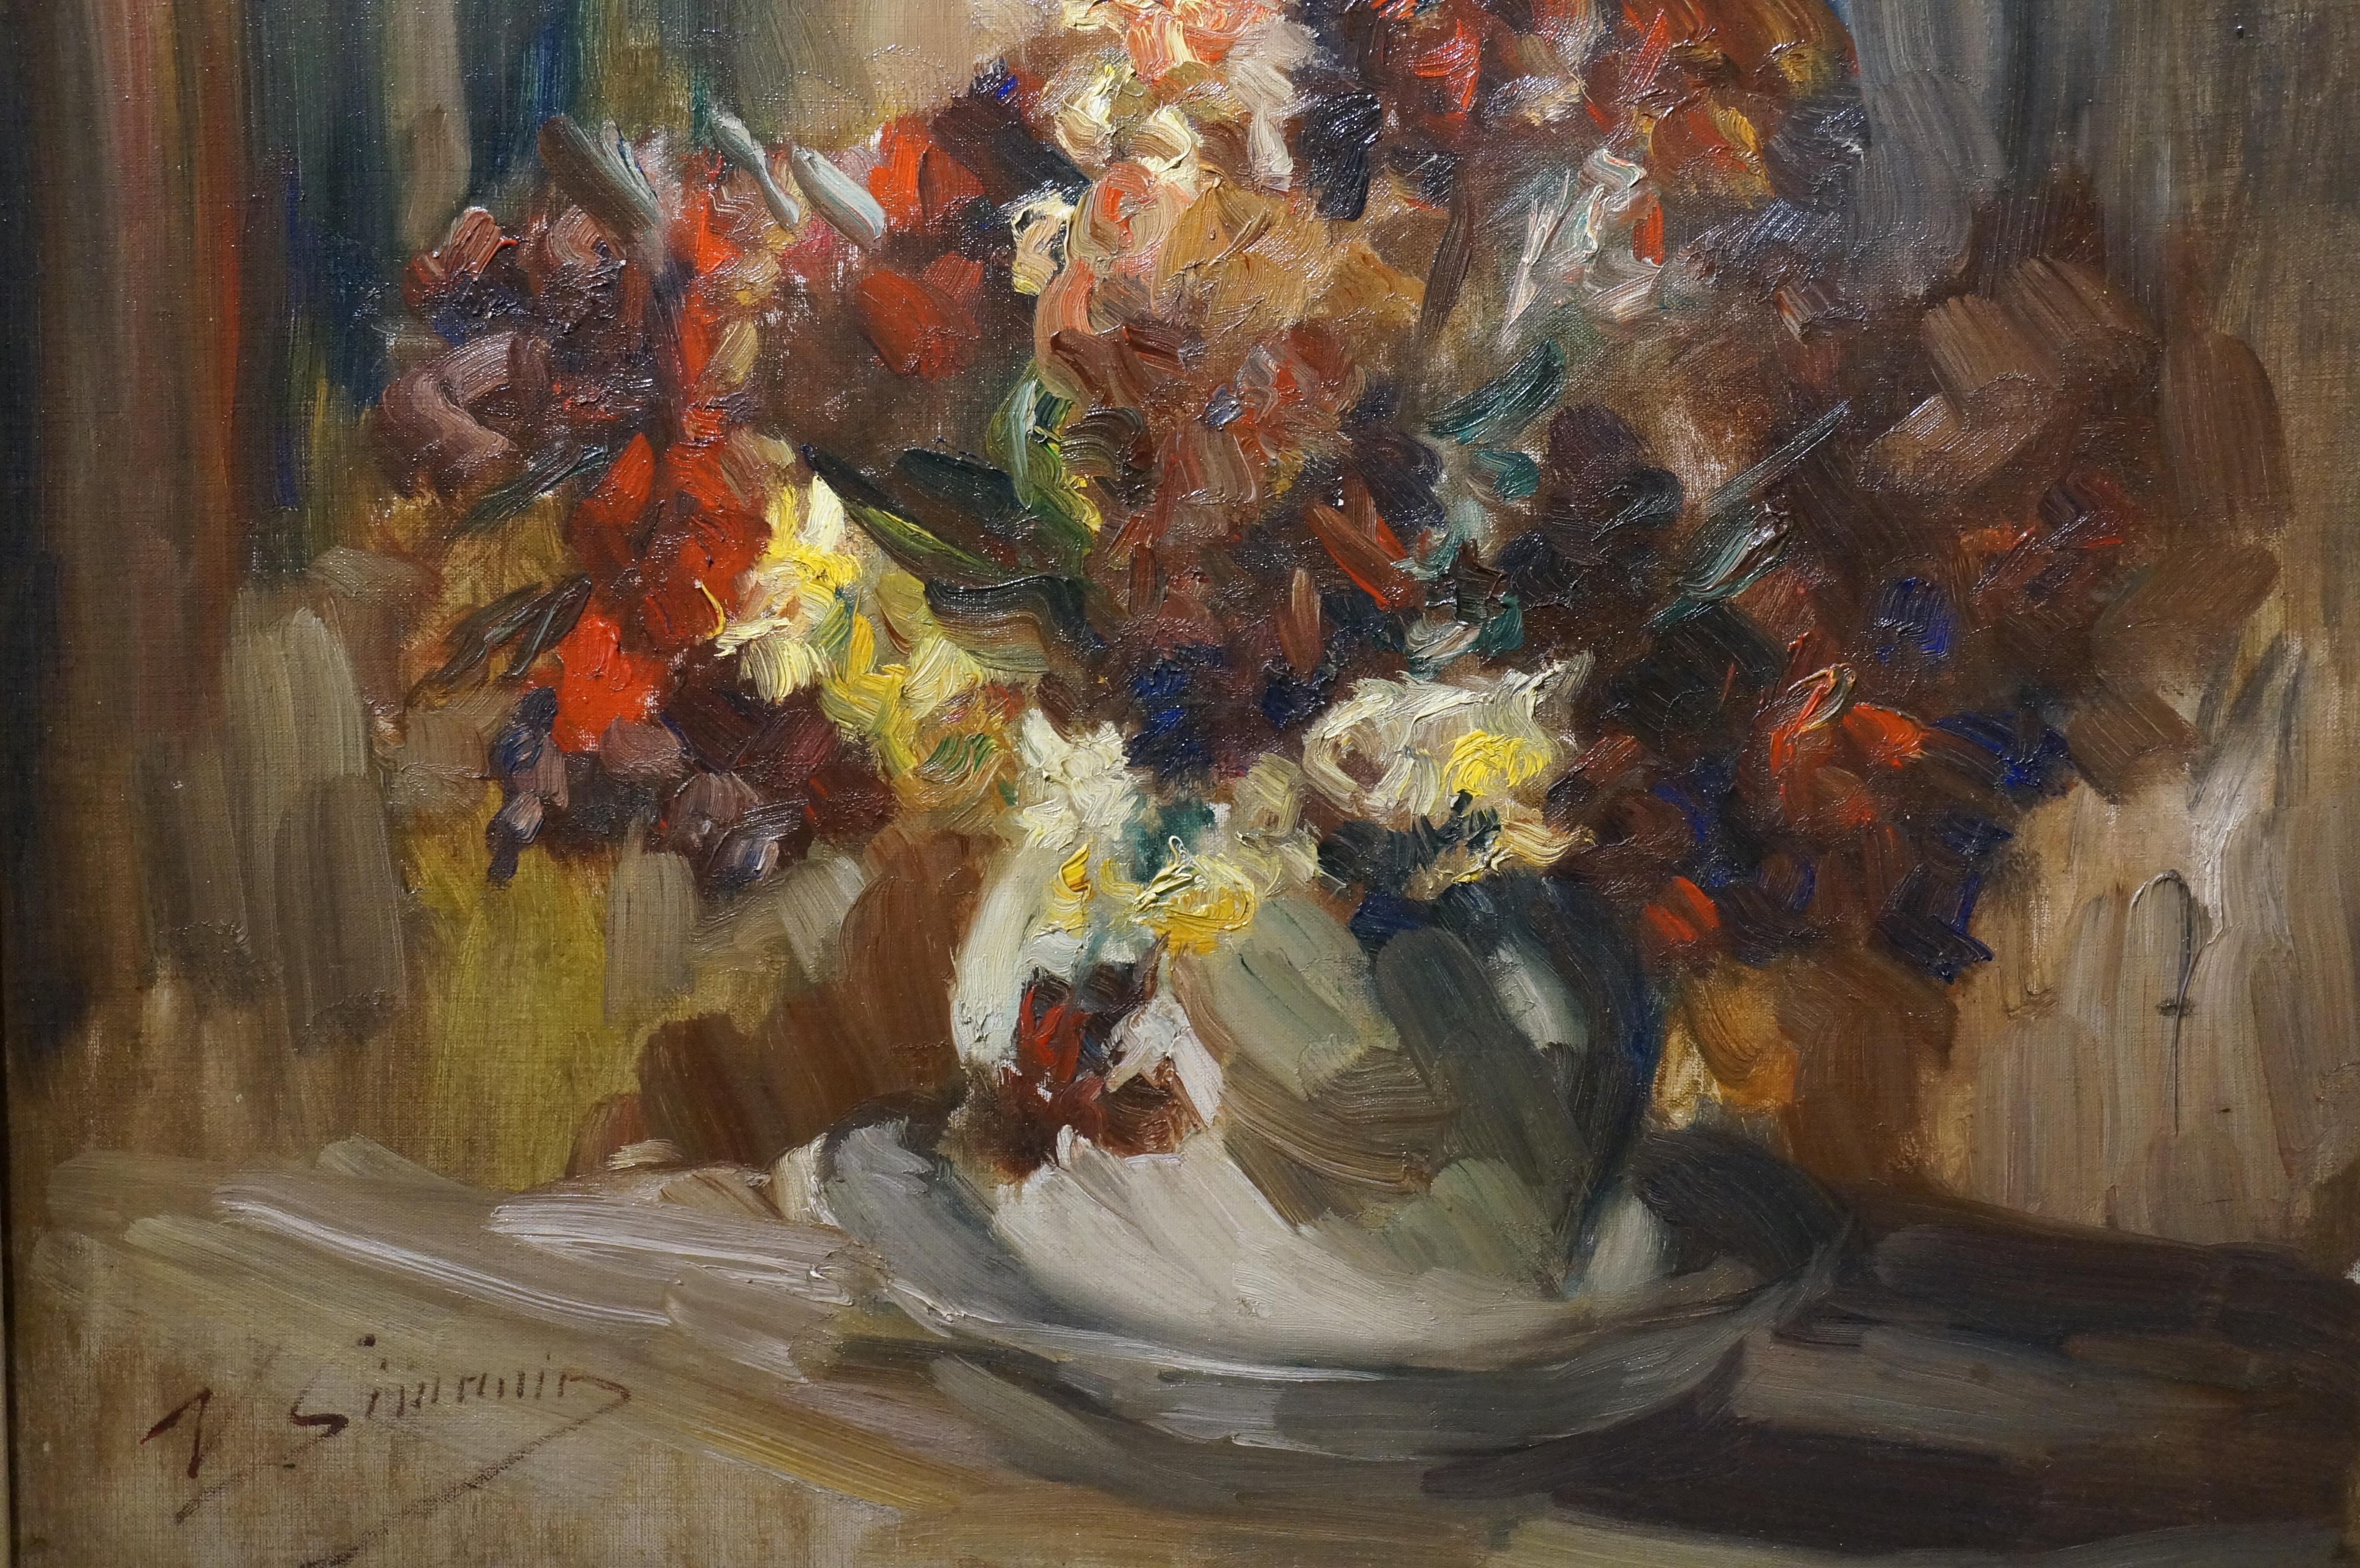 Blumen-Stilleben-Gemälde, Vicor Simonin, impressionistisch, Öl auf Leinwand (Impressionismus), Painting, von Victor Simonin